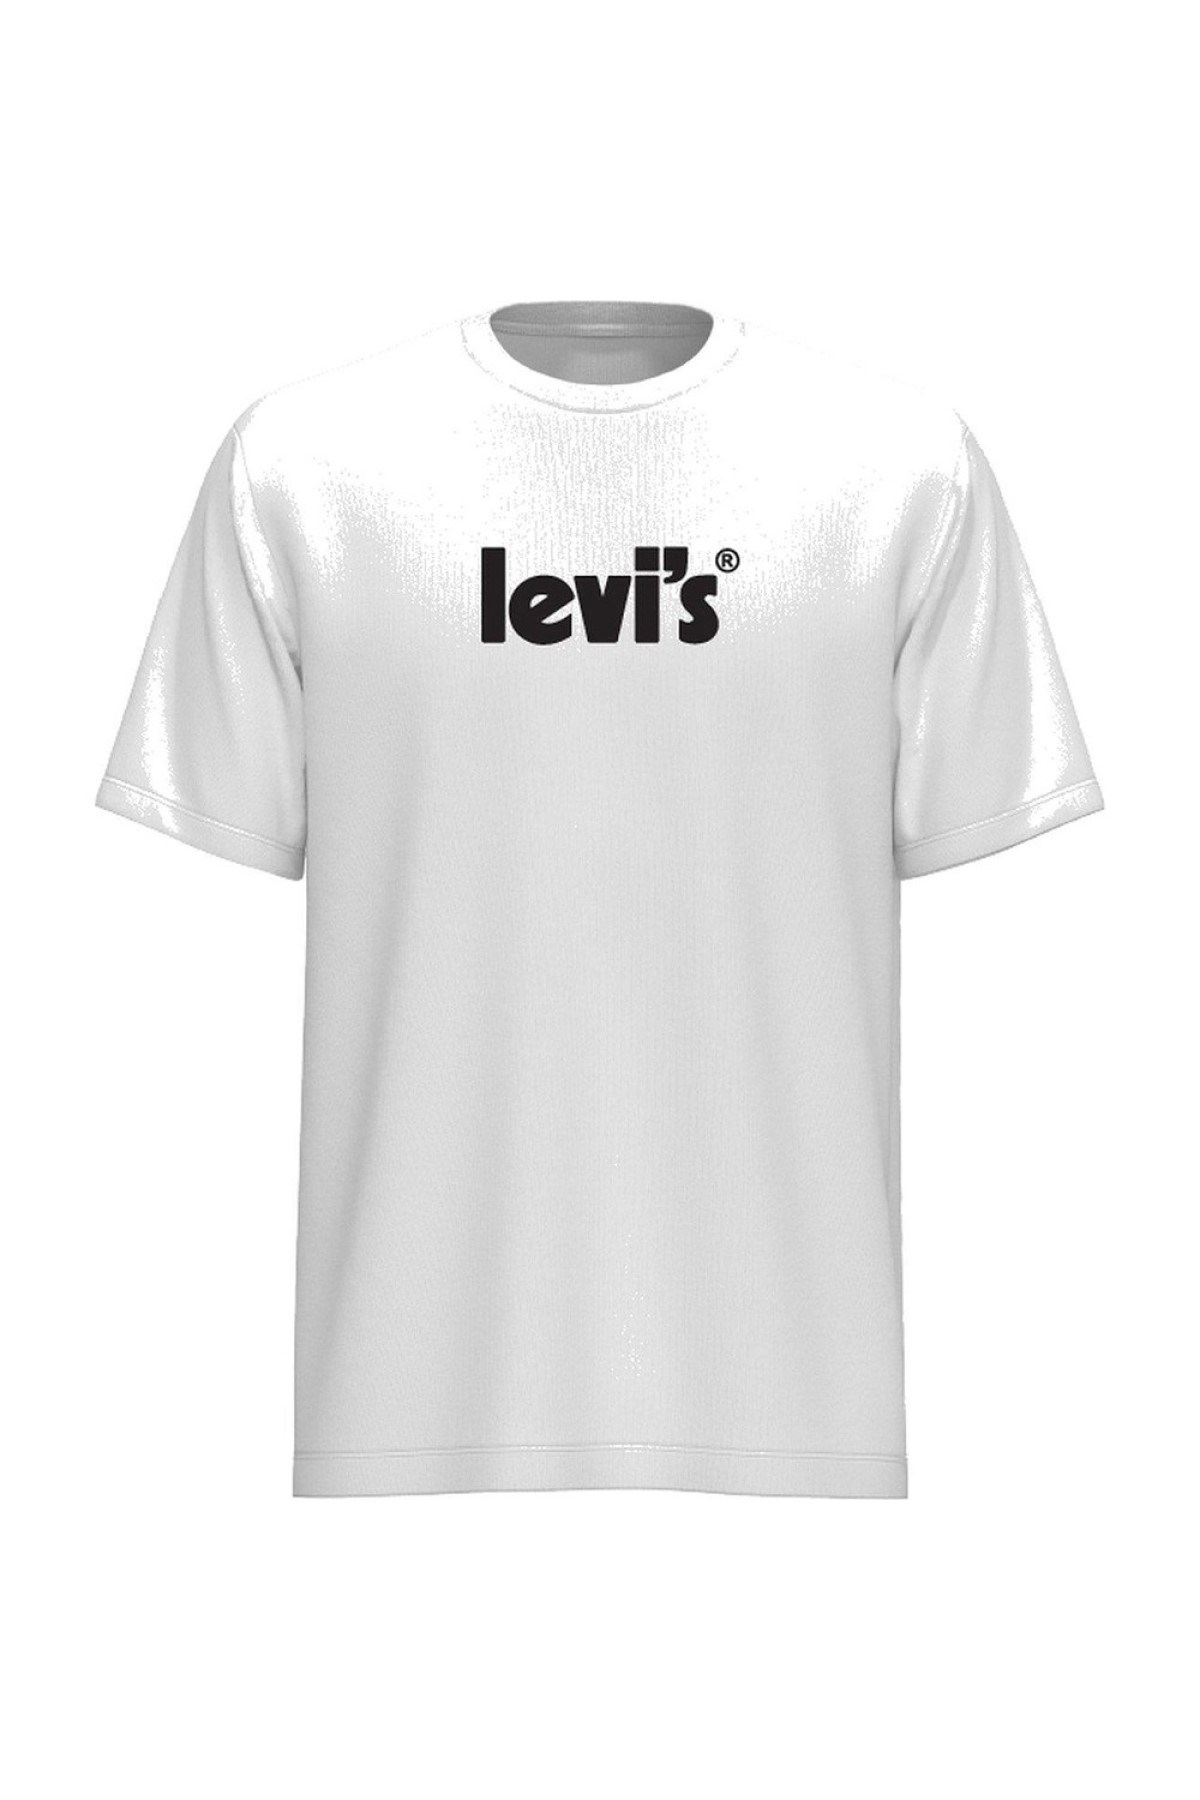 Levis Erkek T-Shirt A2082-0029 